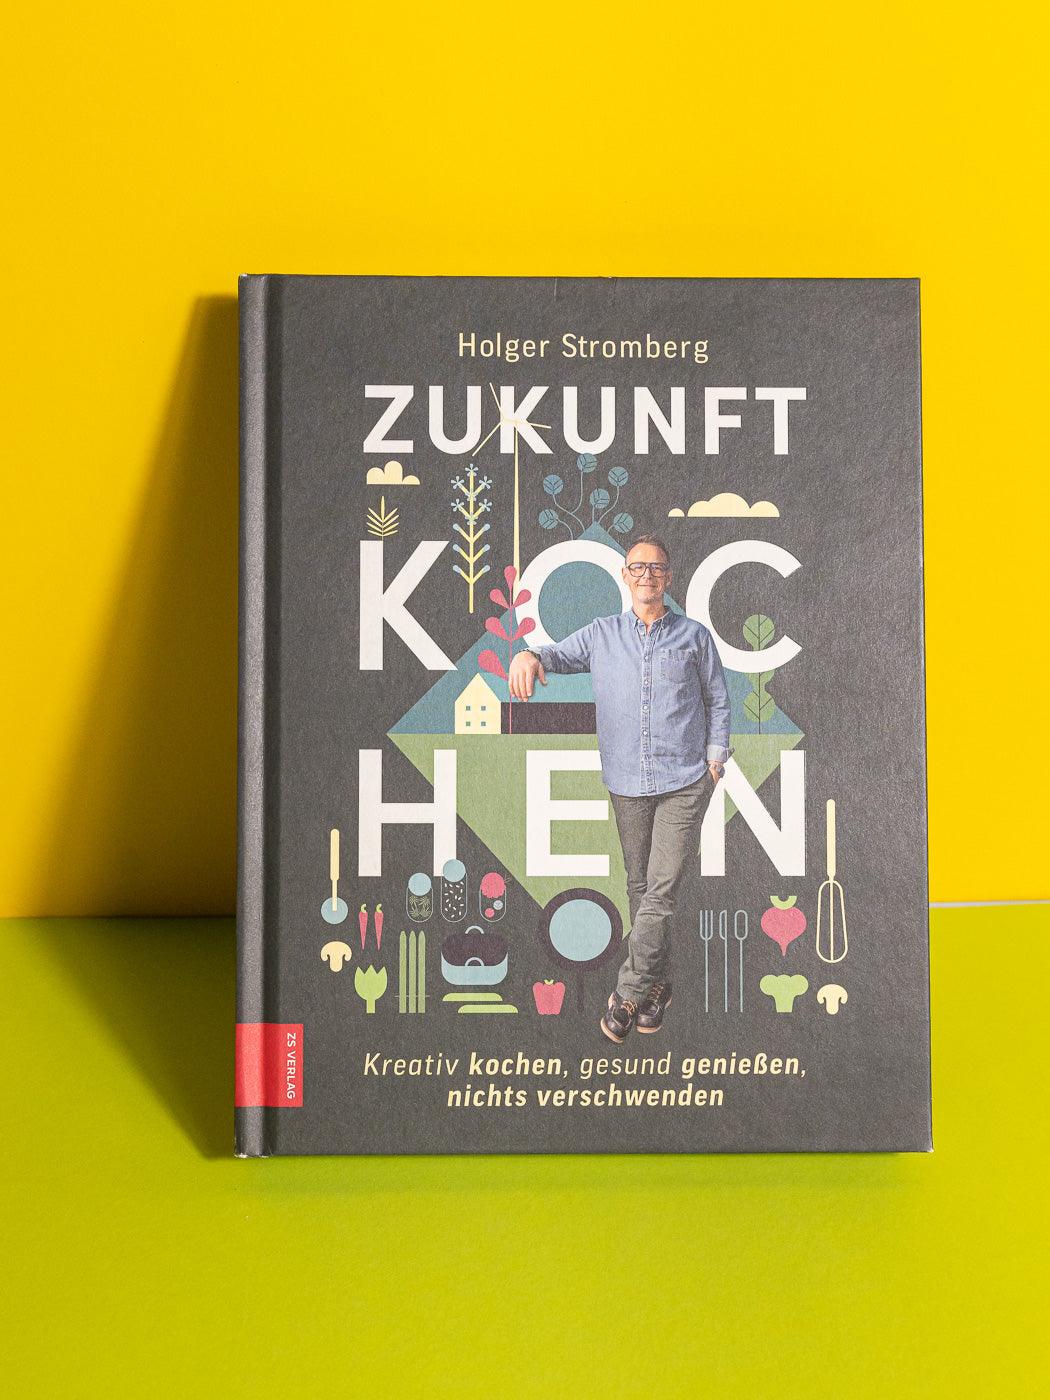 Frontansicht Buch “Zukunft kochen” von Holger Stromberg